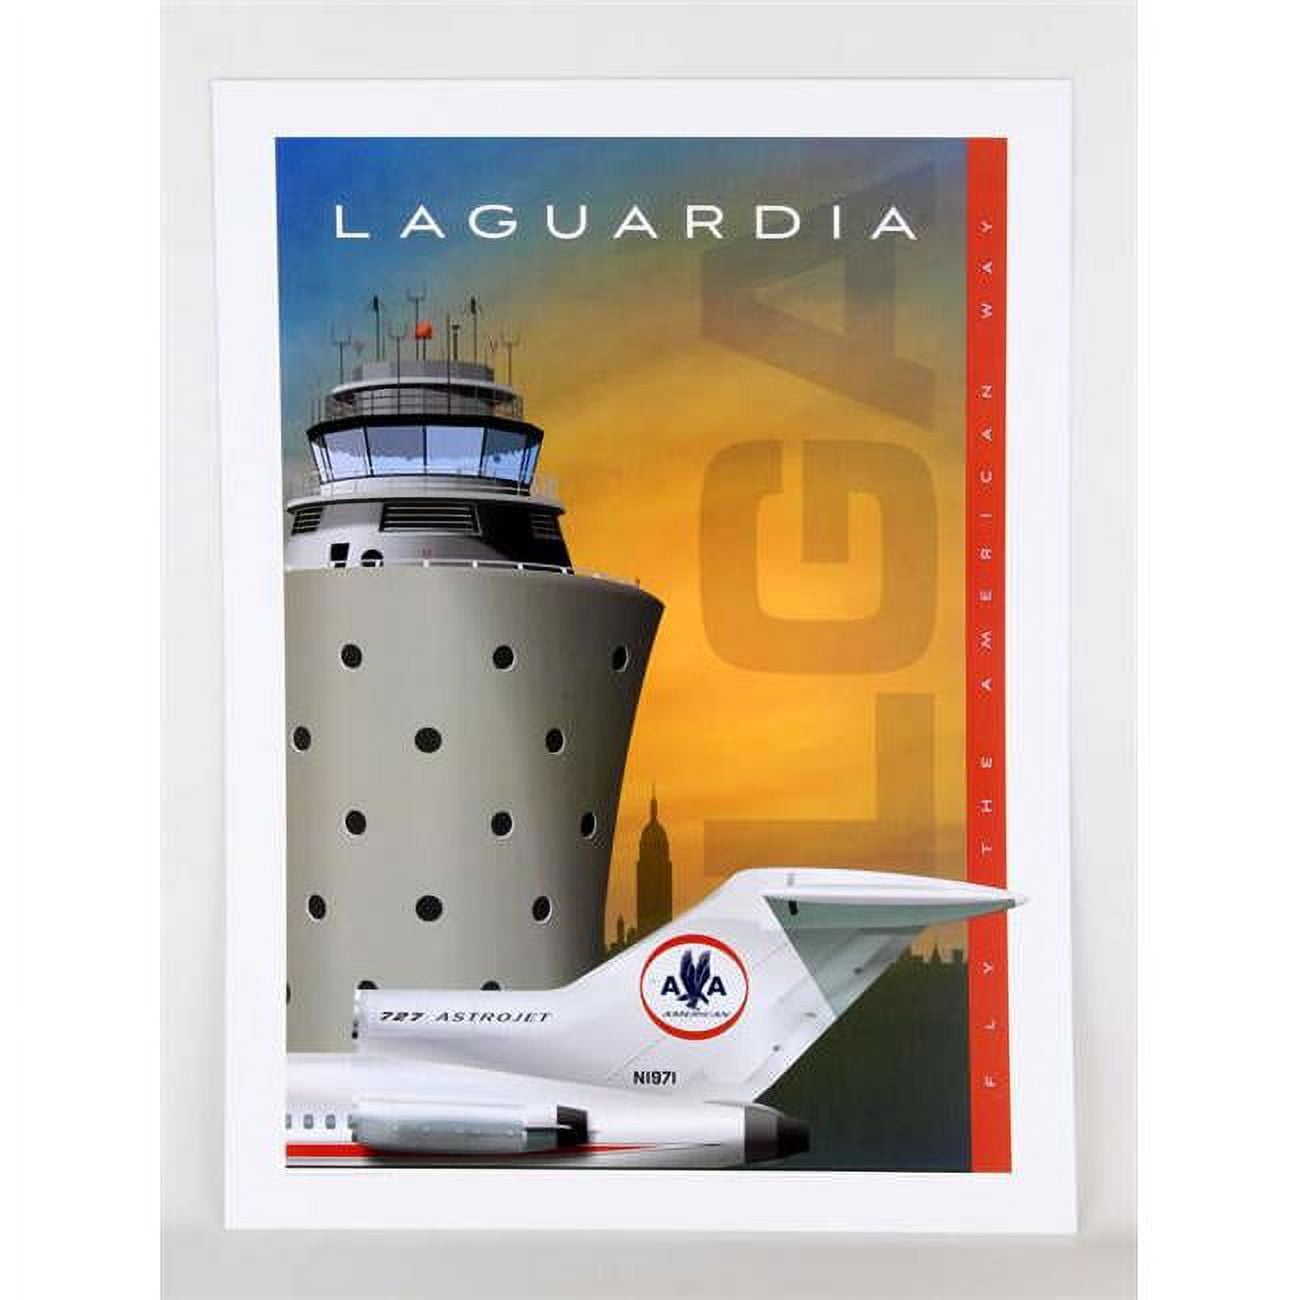 Ja050 14 X 20 In. Laguardia American 727 Poster